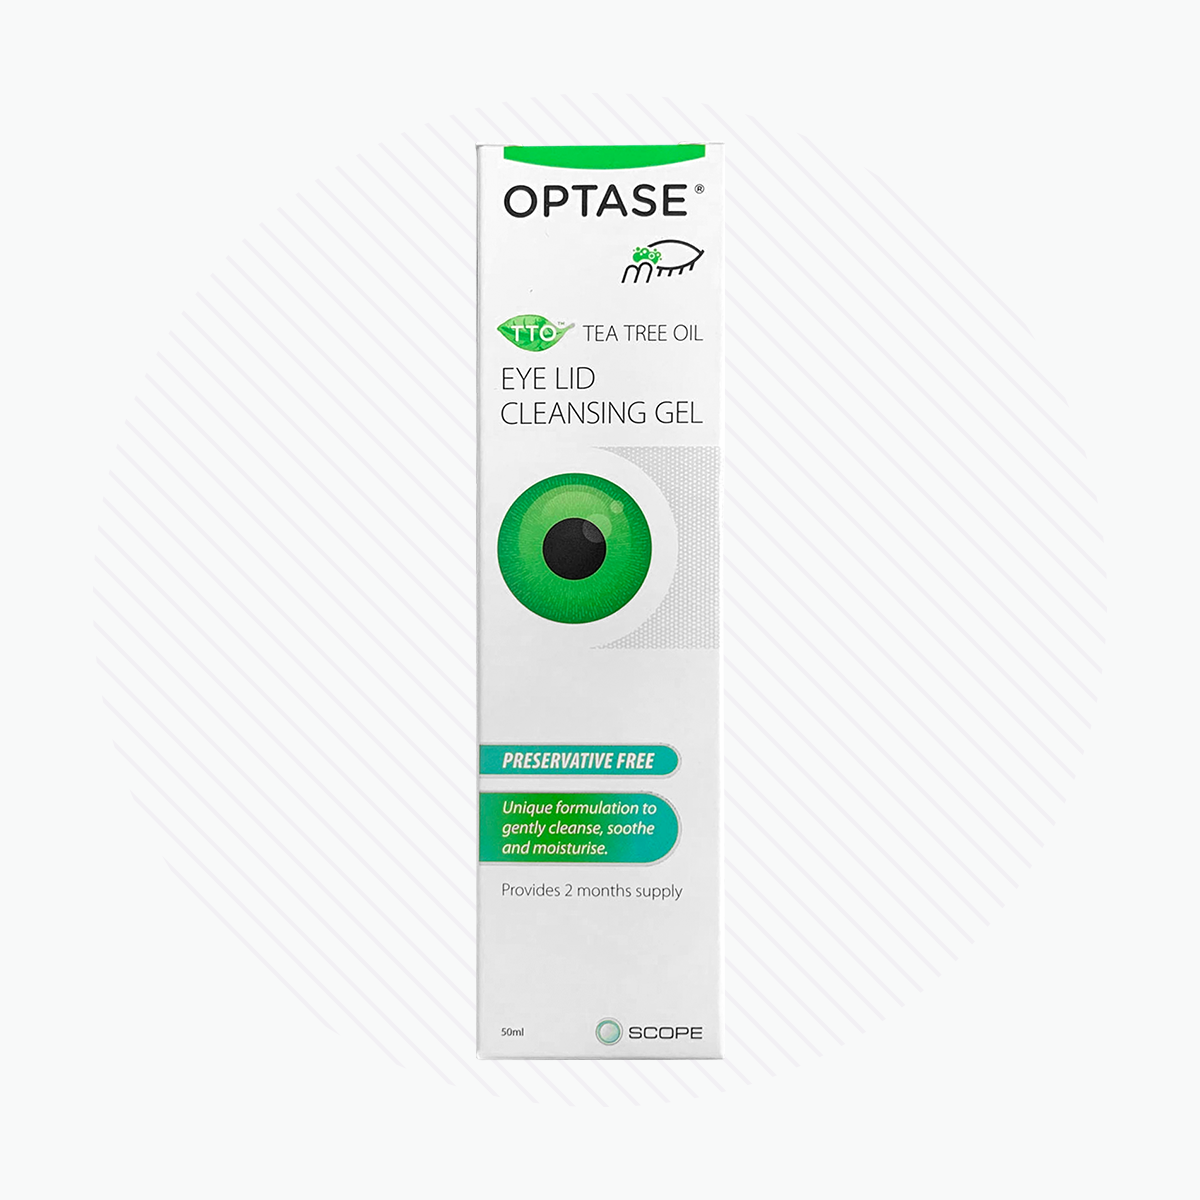 Optase Tea Tree Oil Eye Lid Cleansing Gel